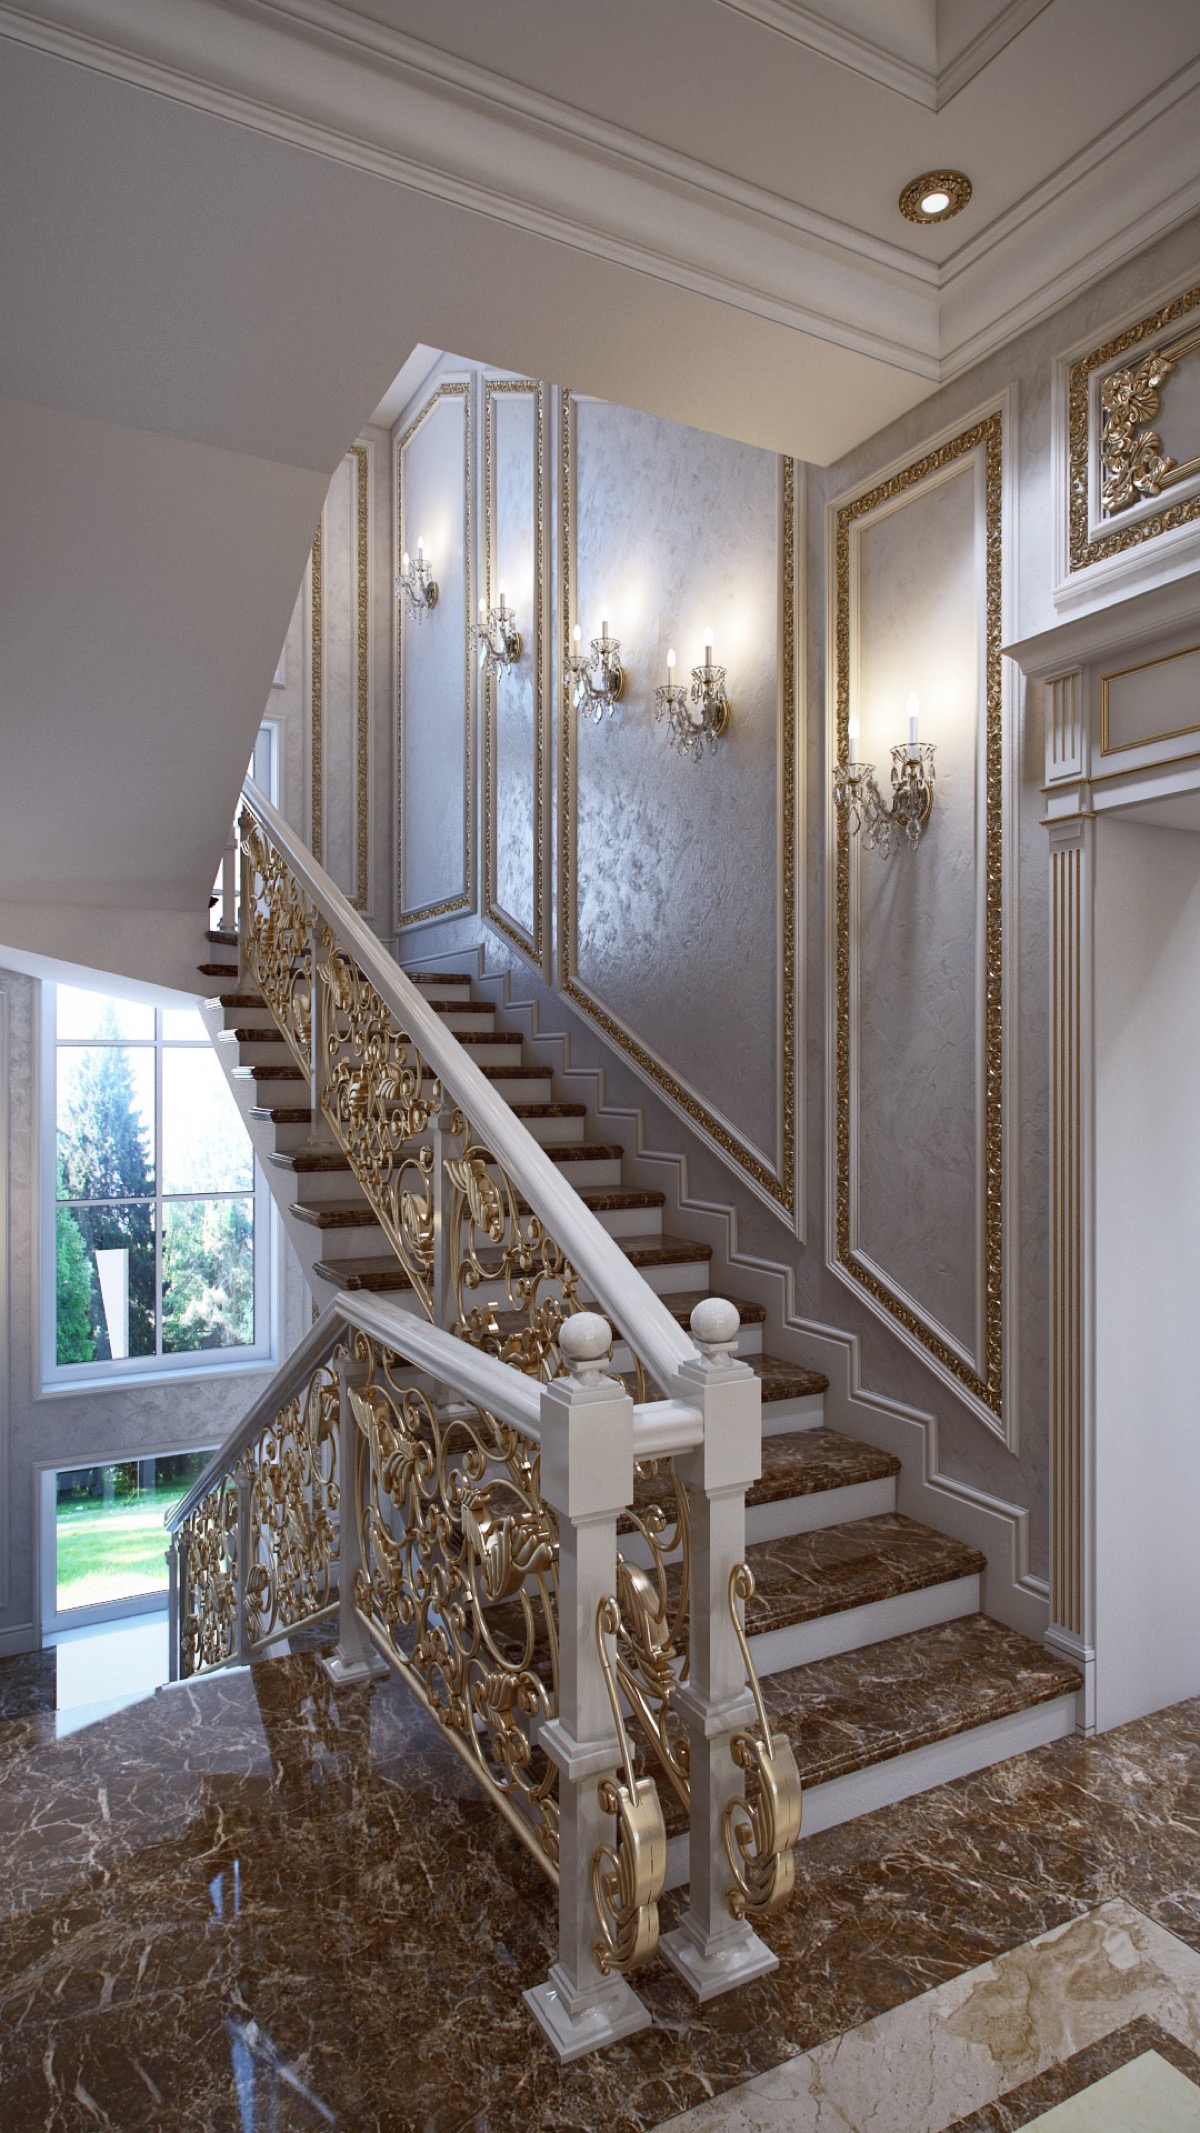 Thiết kế cầu thang sang trọng theo phong cách cổ điển thời đại Louis của Pháp